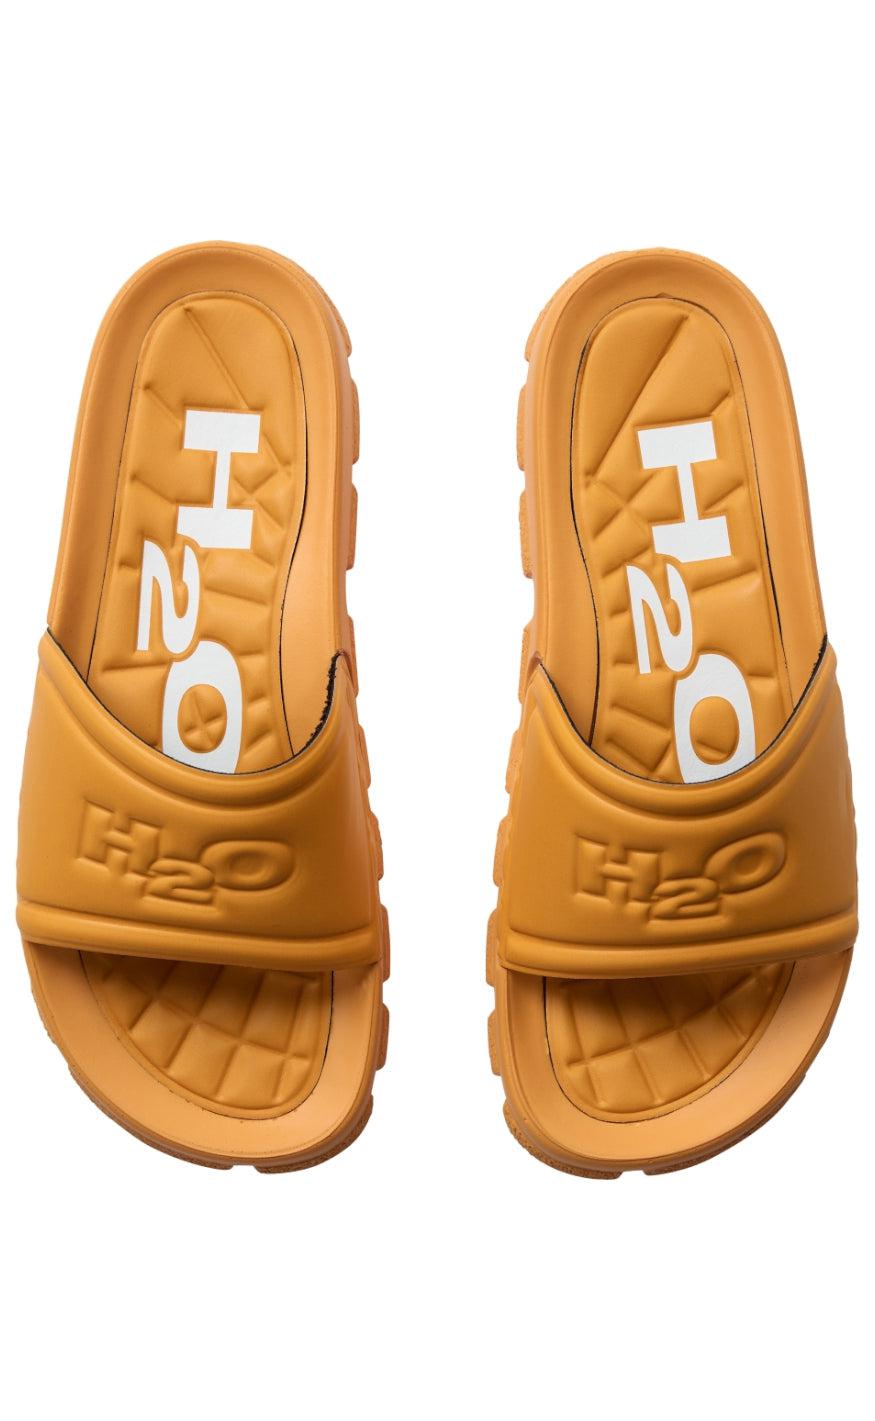 Billede af H2O Sandal - Trek - Apricot hos Fashionbystrand